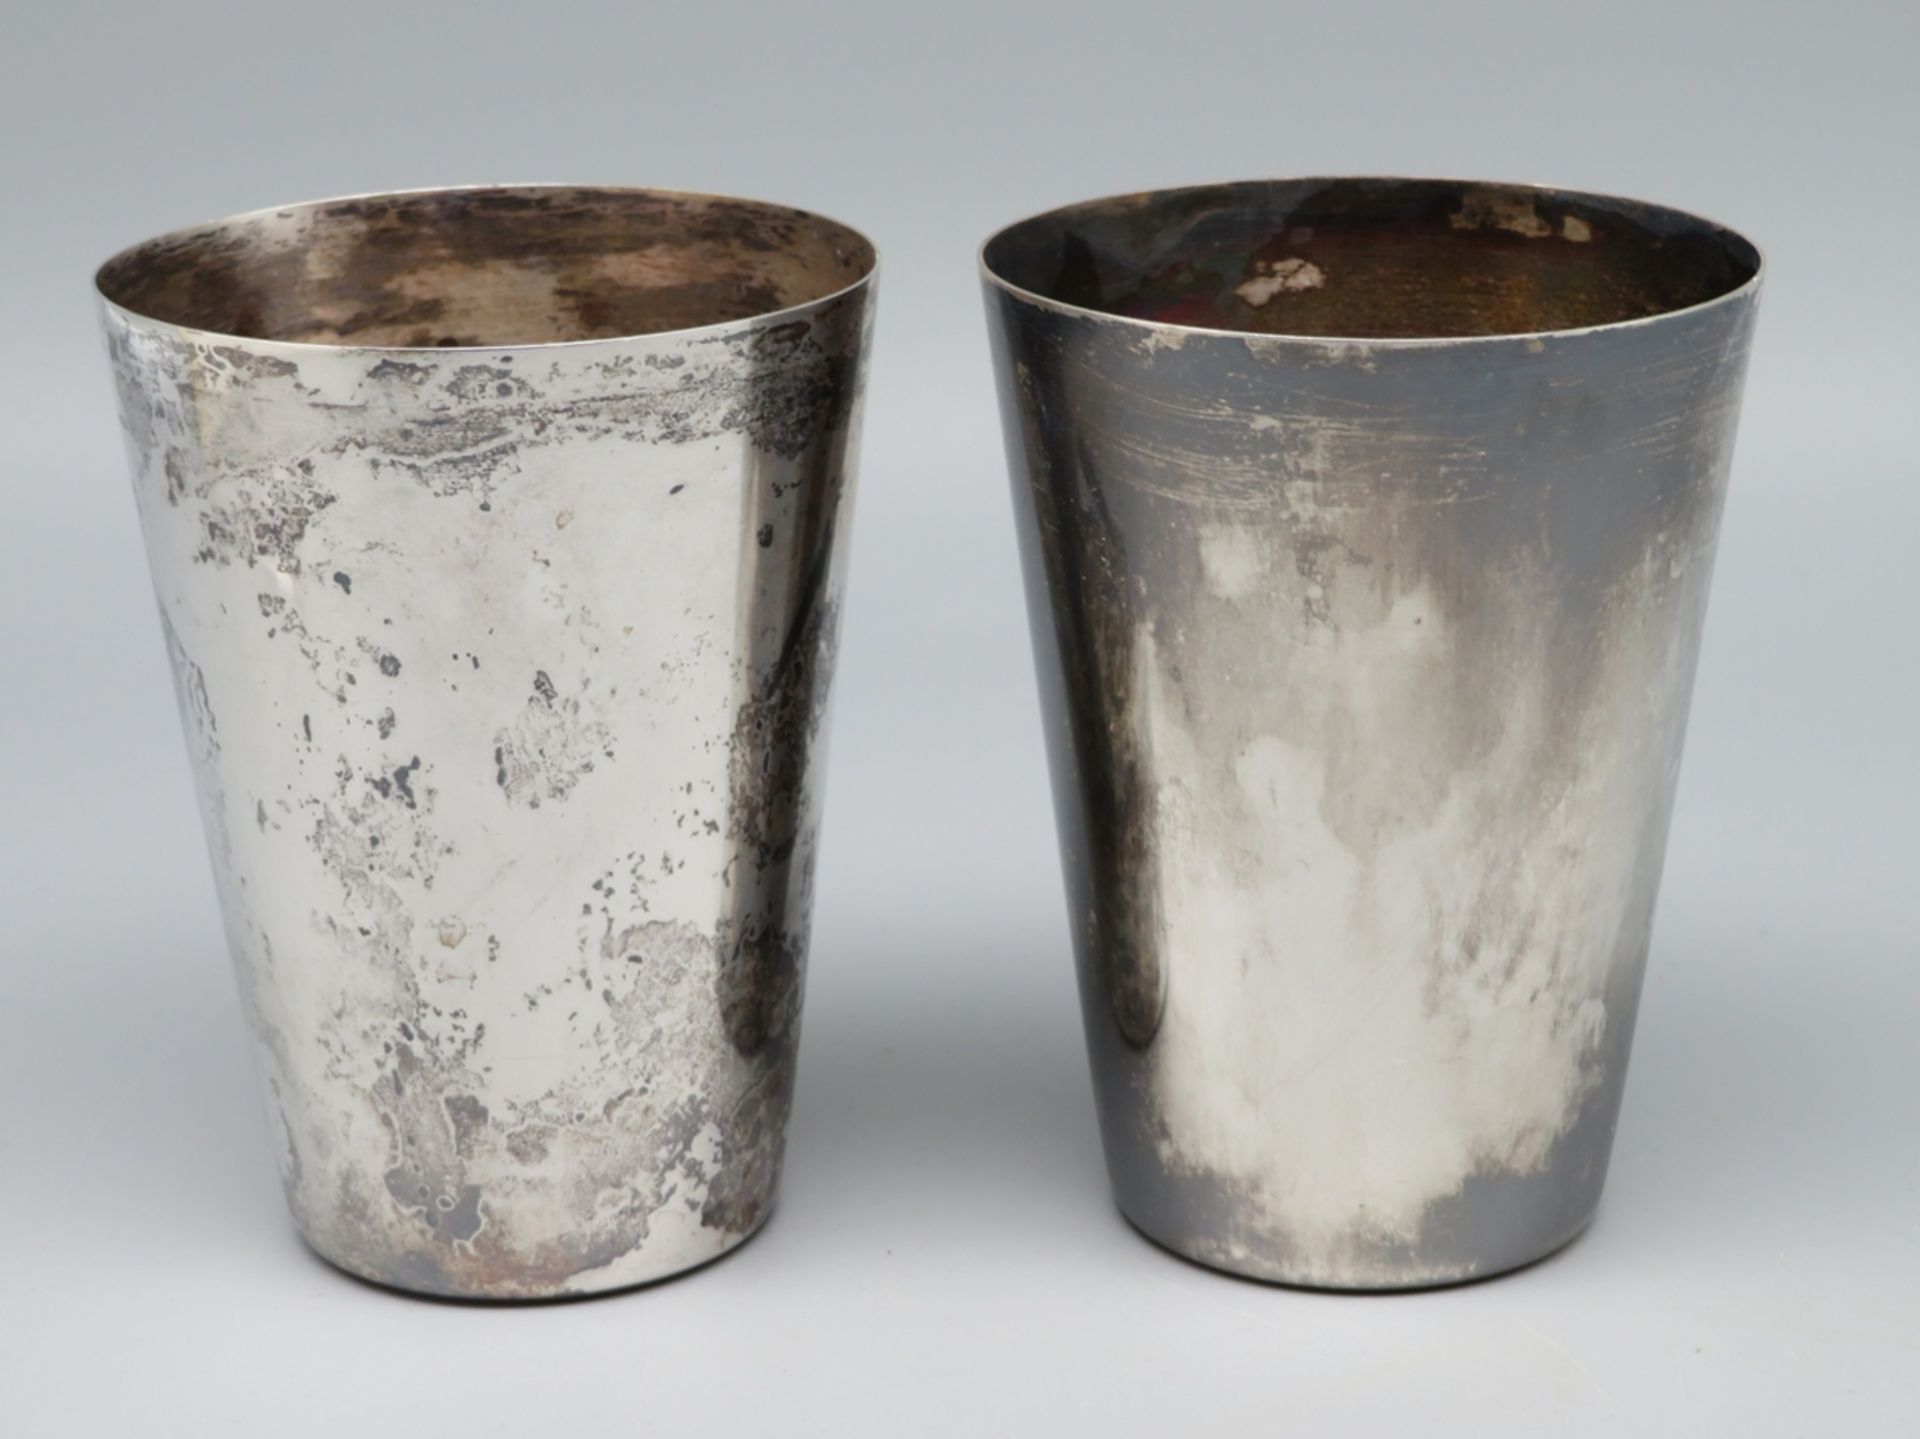 2 Becher, Wilkens, Silber 835/000, punziert, 206,36 g, h 9,6 cm, d 7,1 cm.